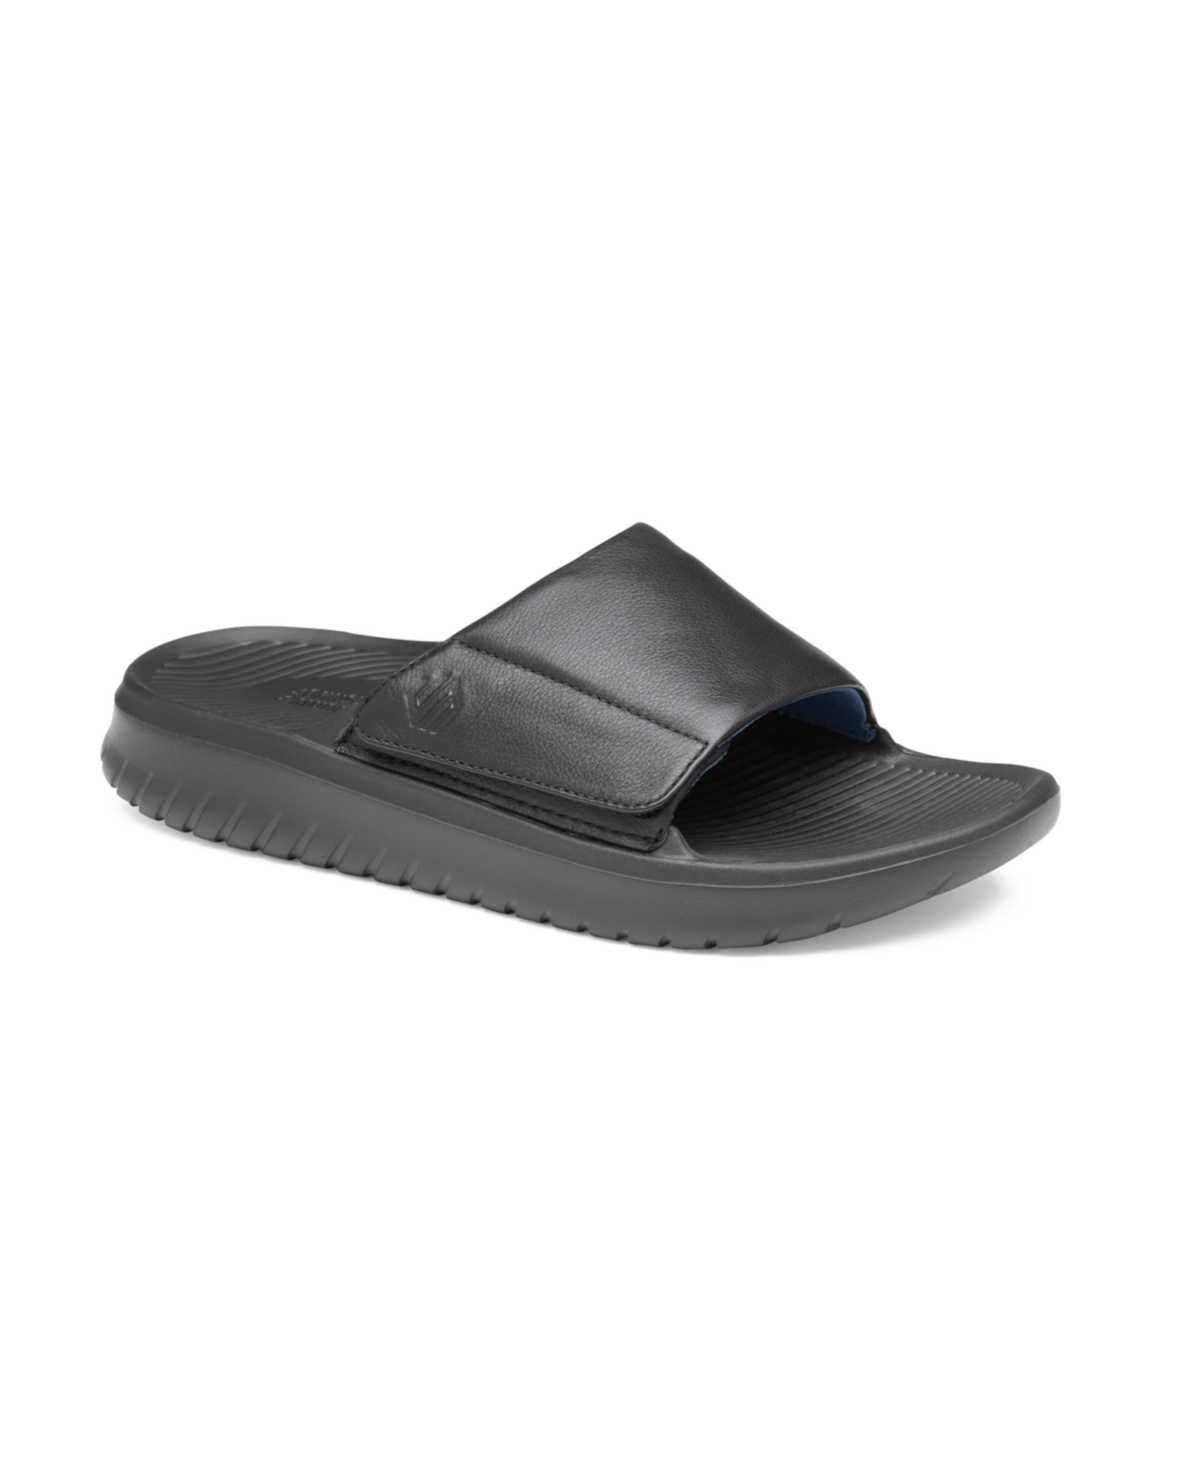 Men's Oasis Slide Sandals - Black Full Grain